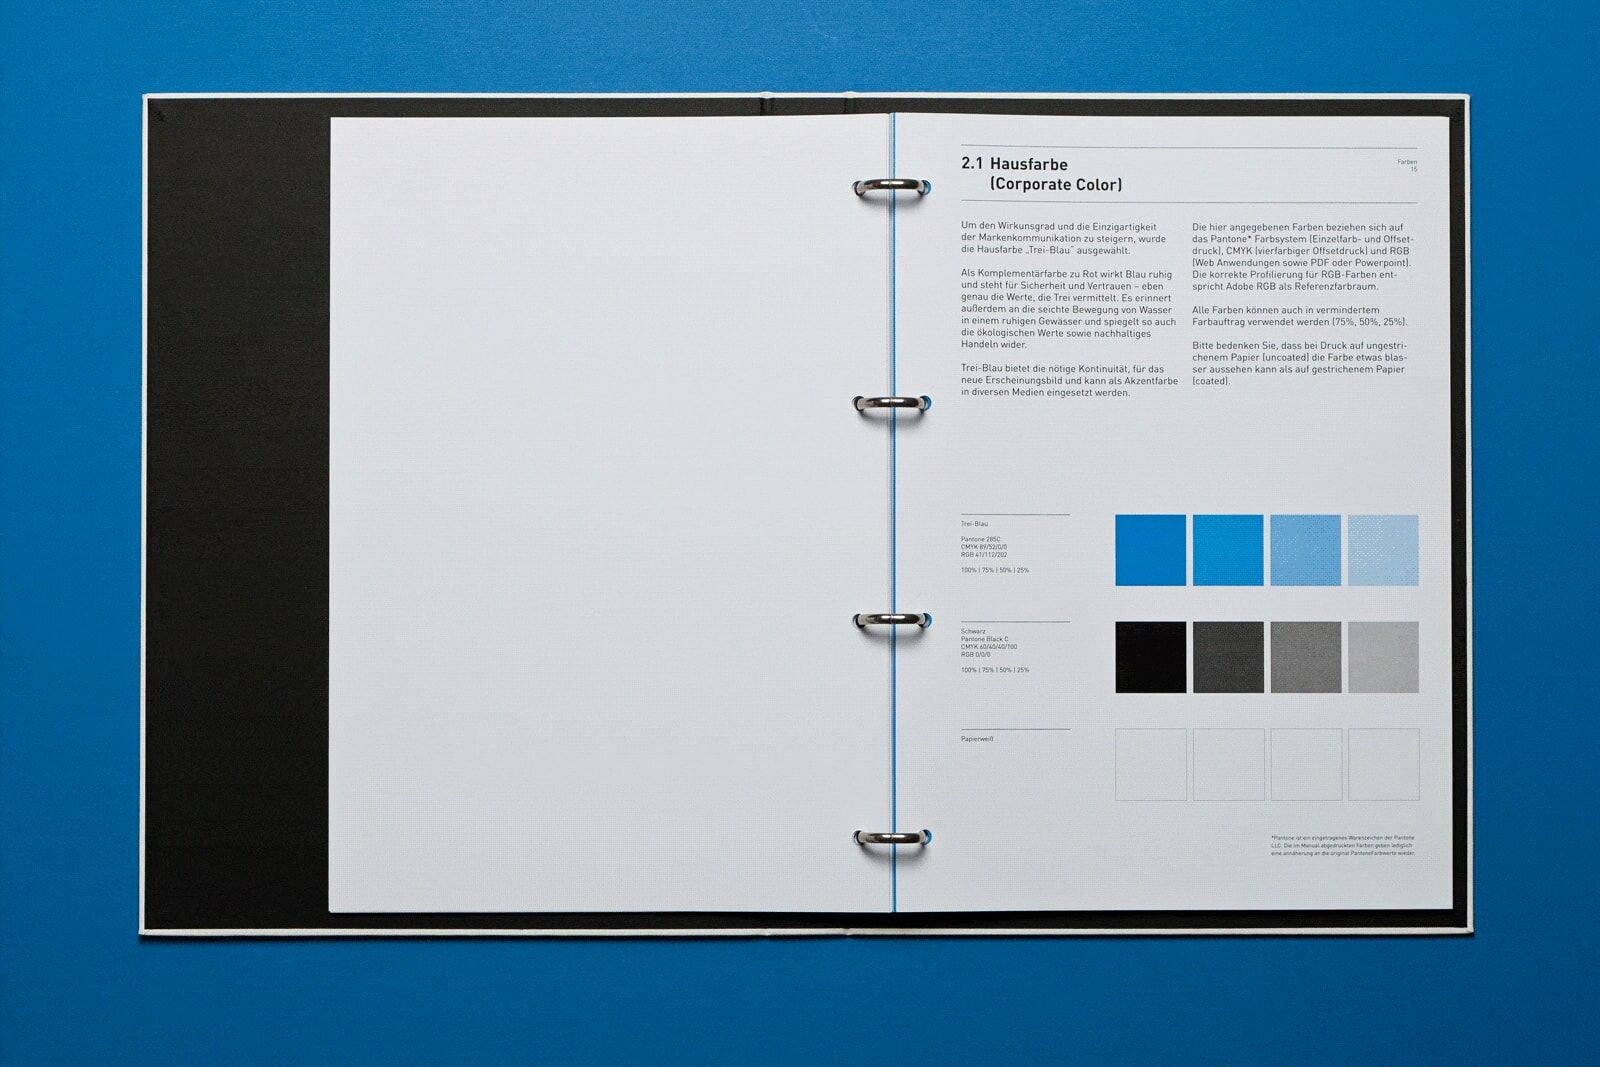 Trei Corporate Design Manual